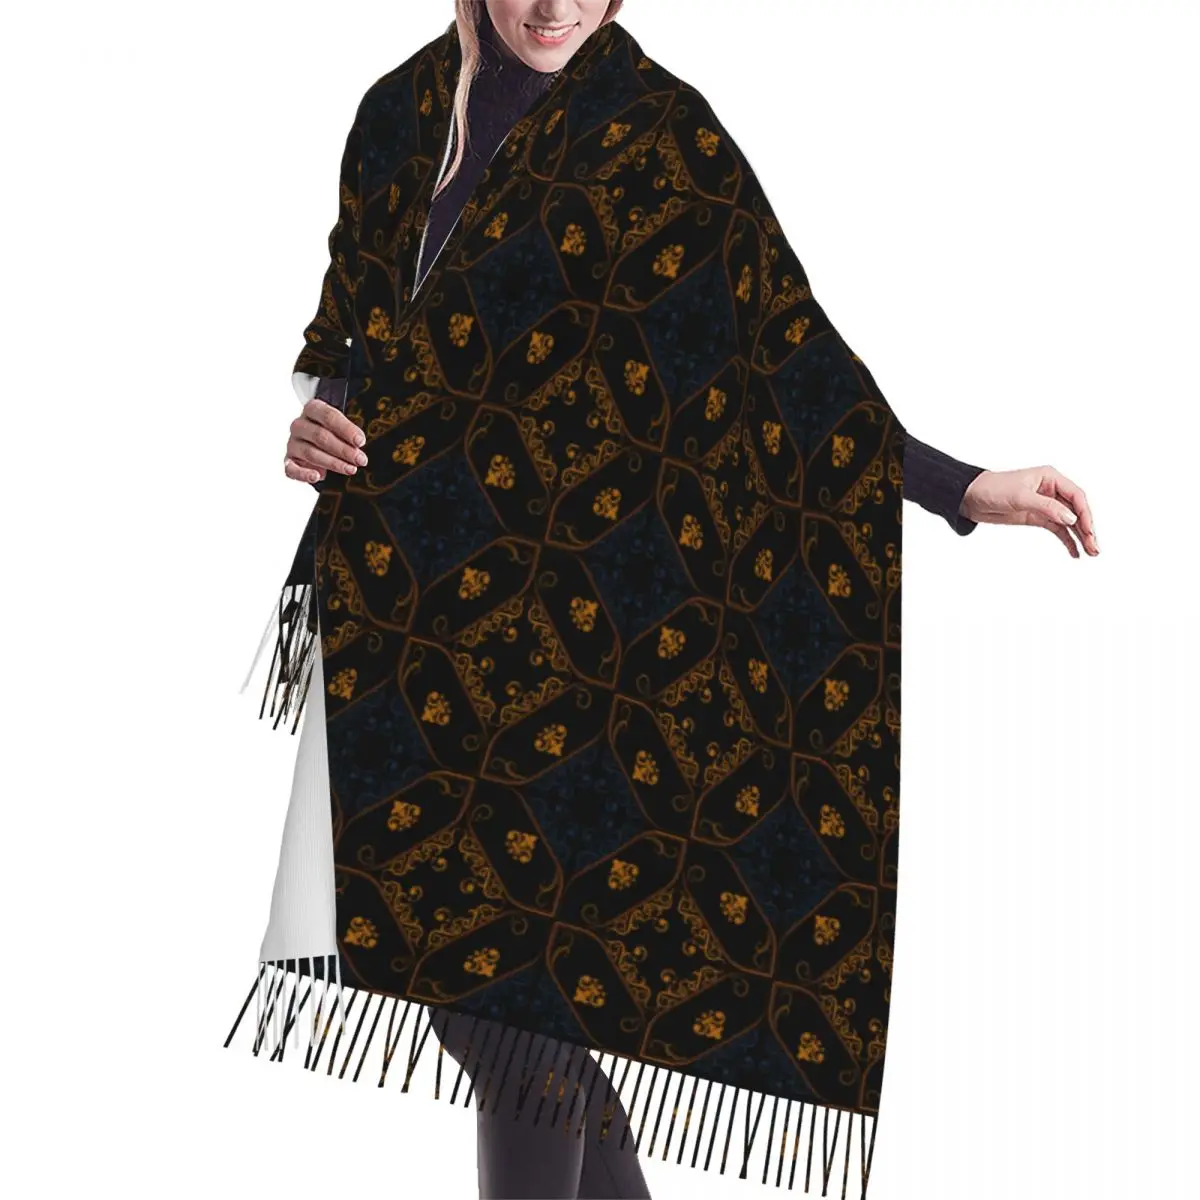 

Lady Large Multicolor Pattern In The Arabian Style Luxury Versatile Scarves Women Winter Fall Soft Warm Tassel Shawl Wrap Scarf